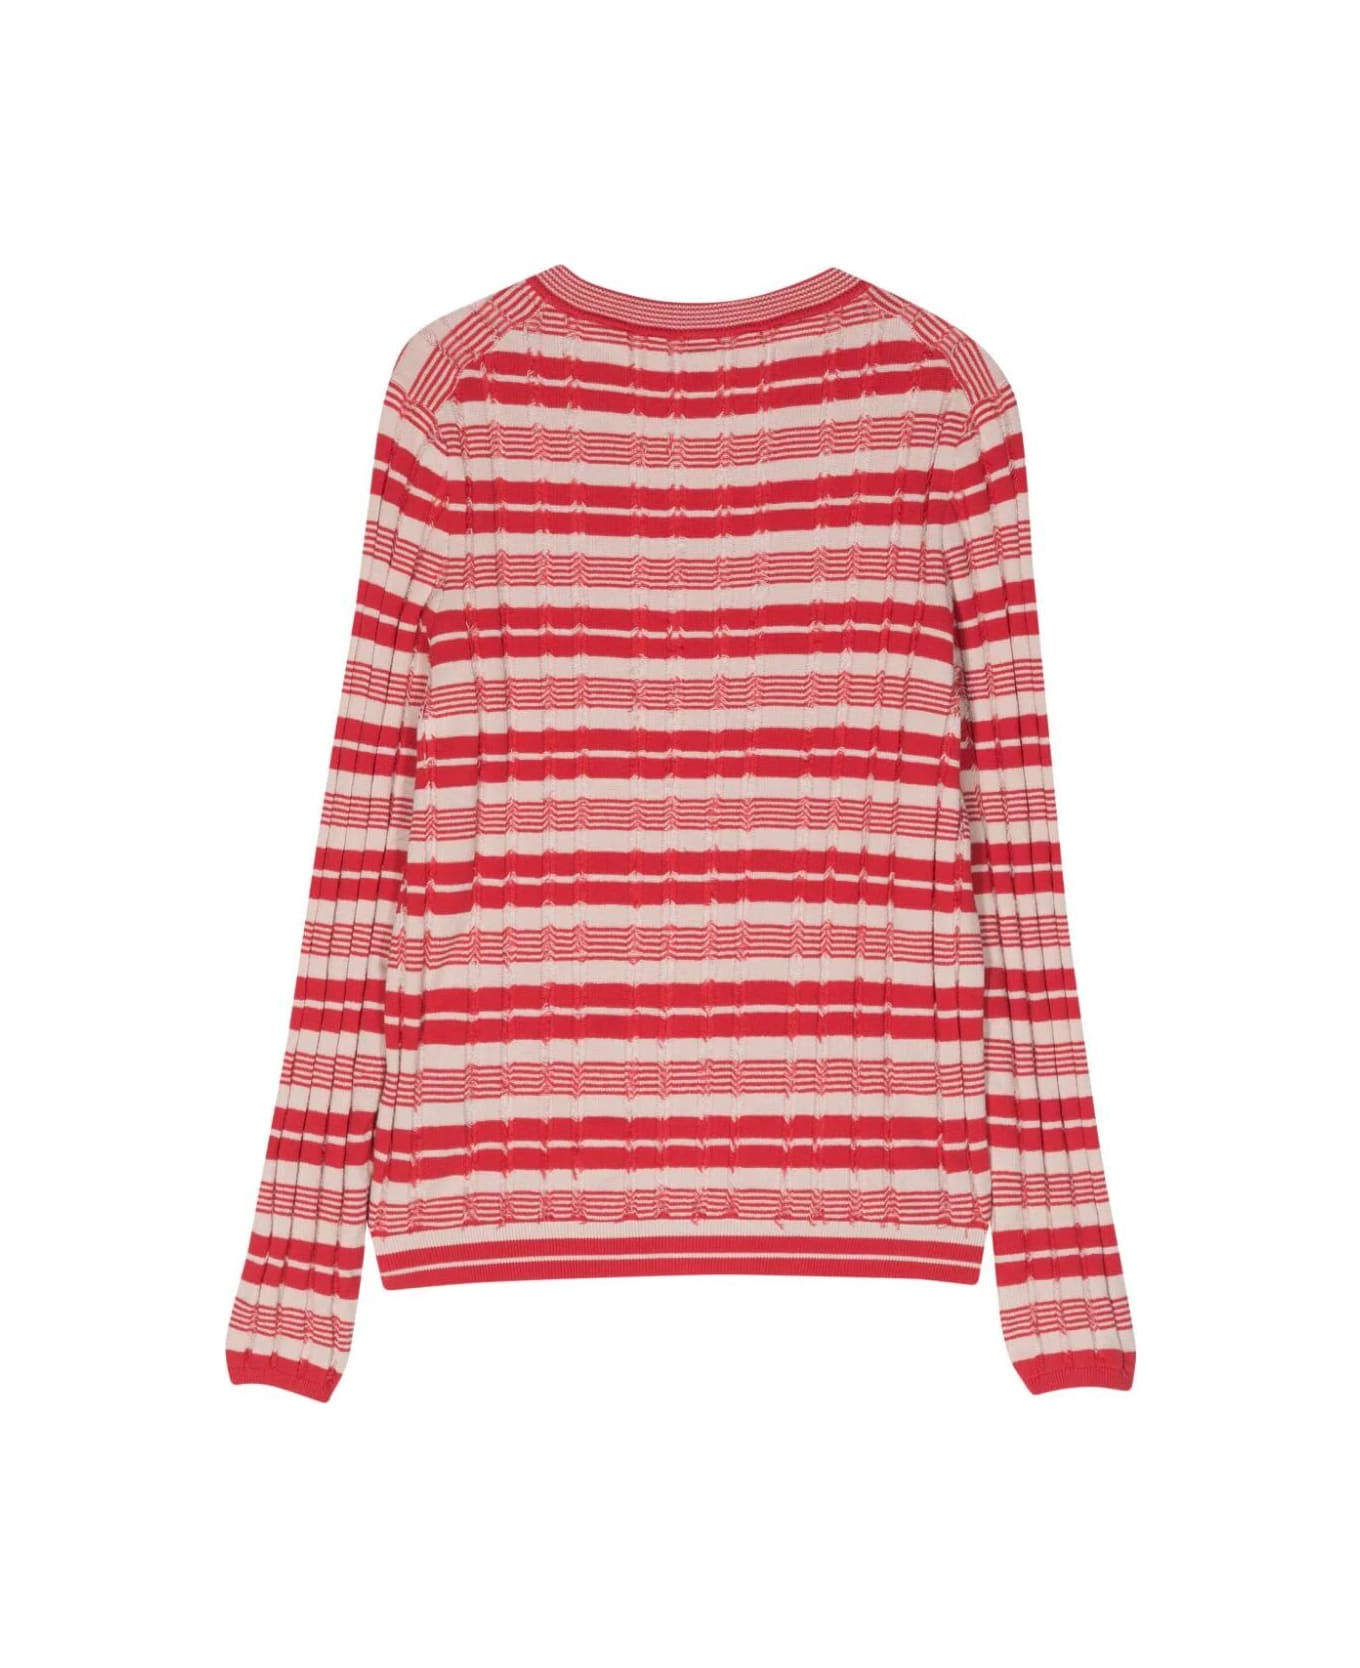 Paul Smith Long Sleeves Striped Korean Sweater - Red ニットウェア